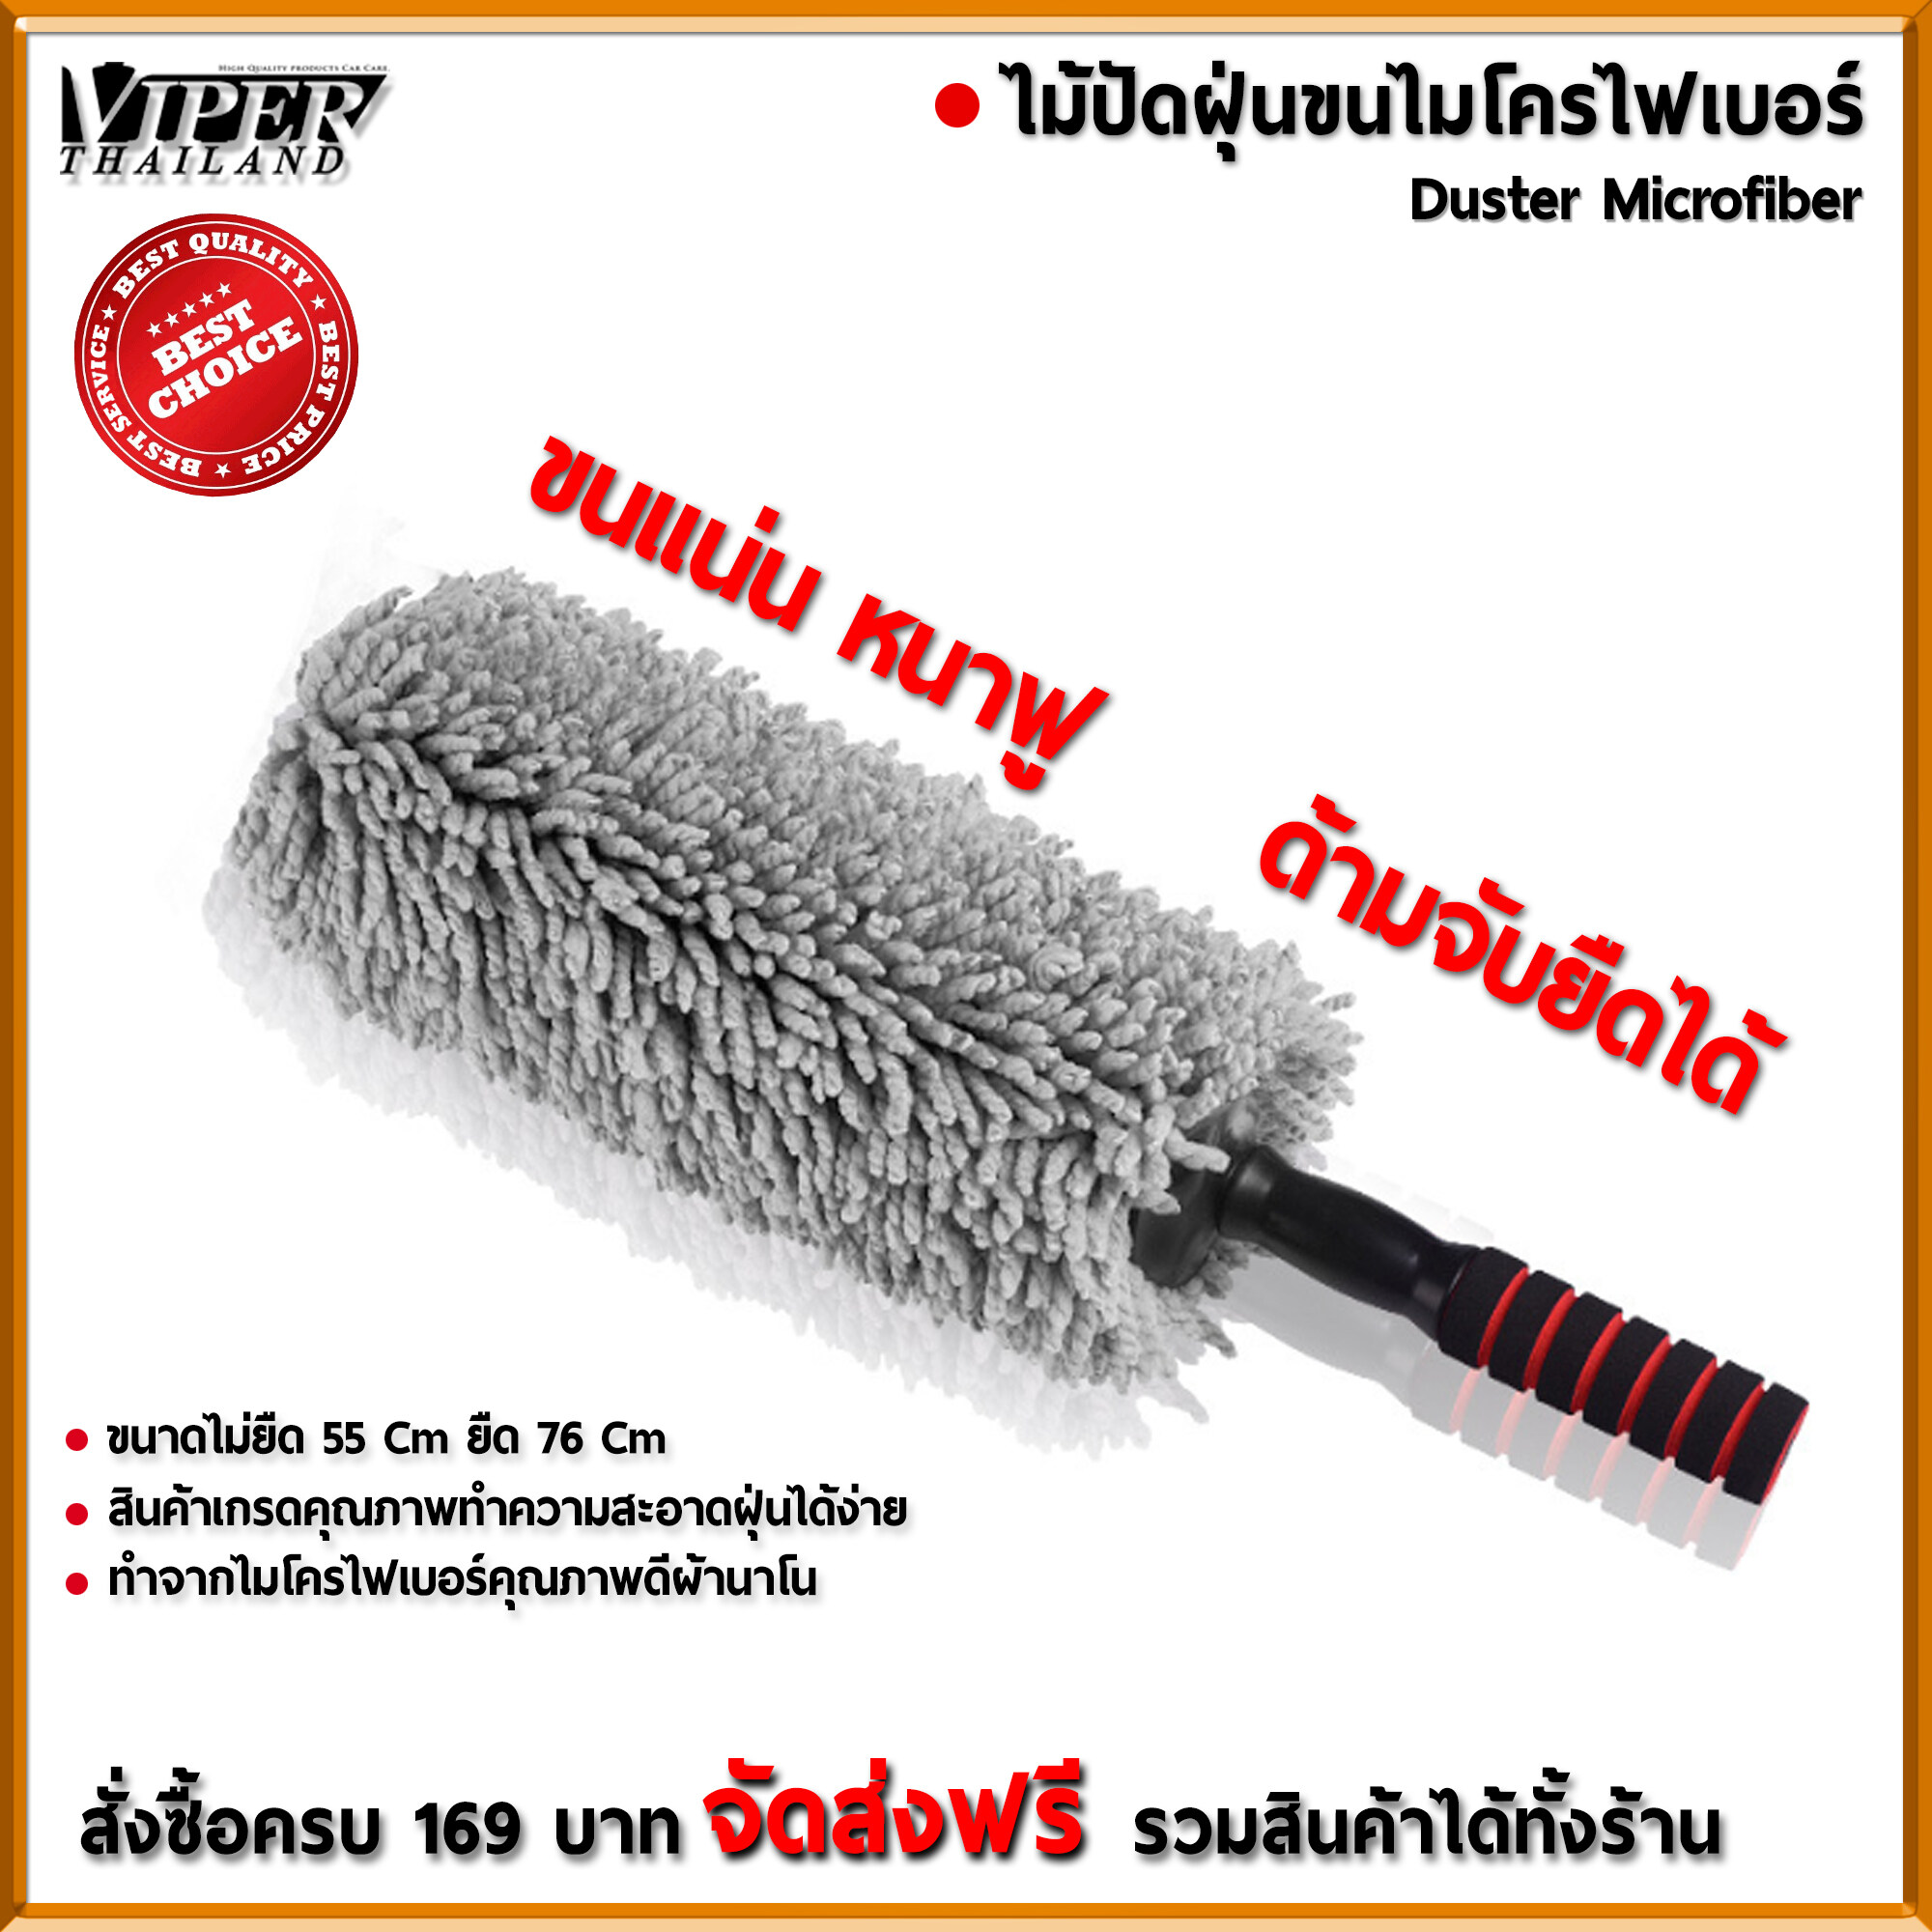 ไม้ปัดฝุ่น นาโน ไมโครไฟเบอร์ ไม้ปัดฝุ่นทำความสะอาด Duster Microfiber Viper Thailand